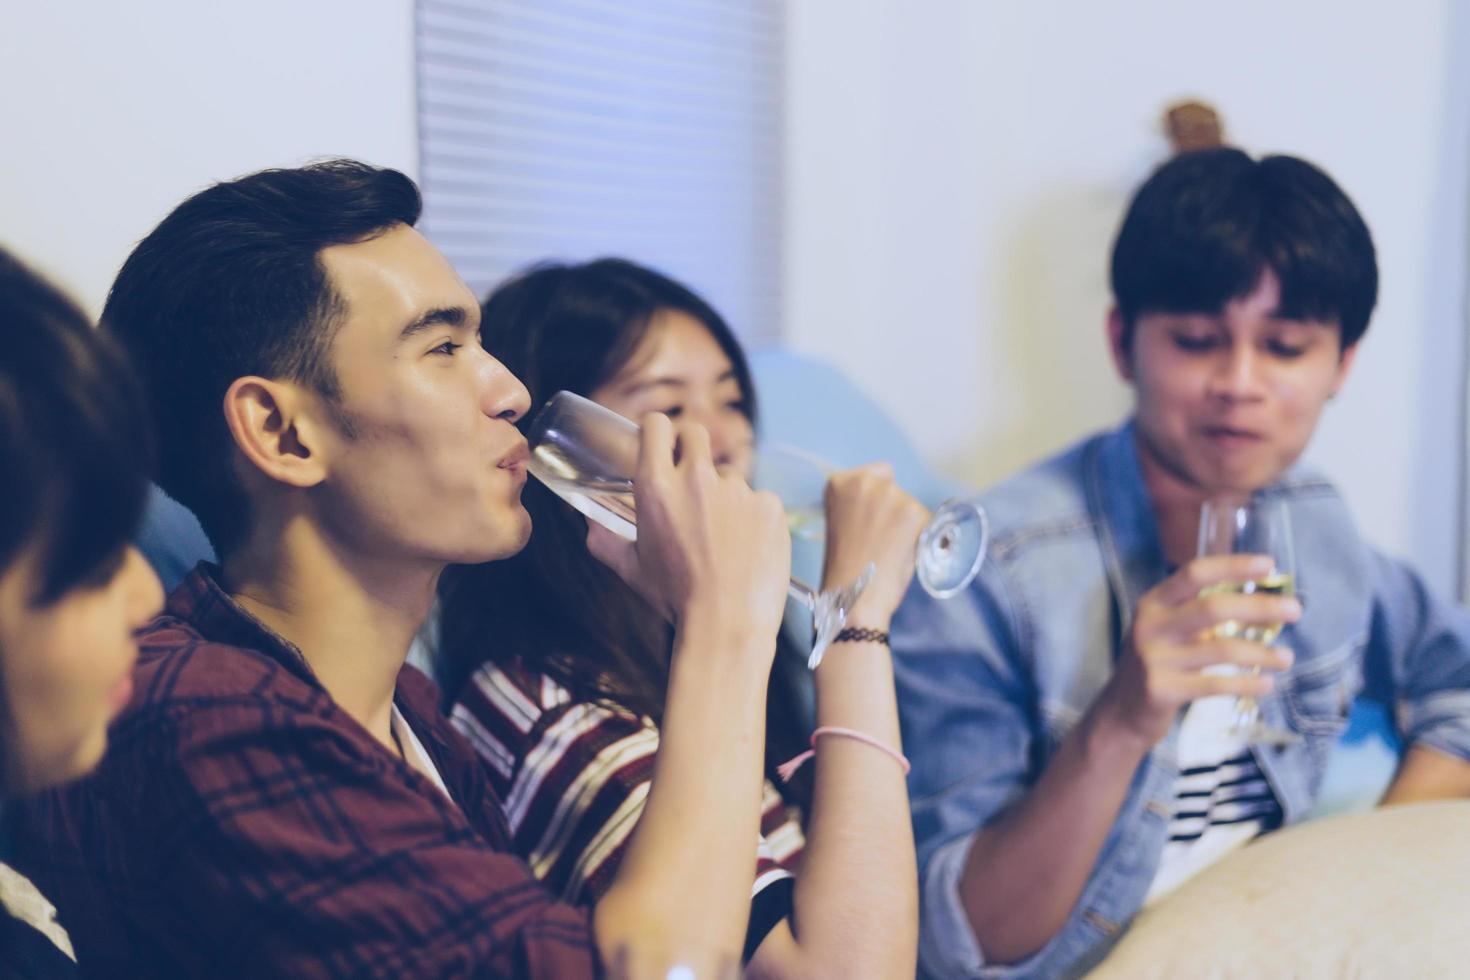 groupe d'amis asiatiques faisant la fête avec des boissons alcoolisées à la bière et des jeunes appréciant dans un bar grillant des cocktails.soft focus photo